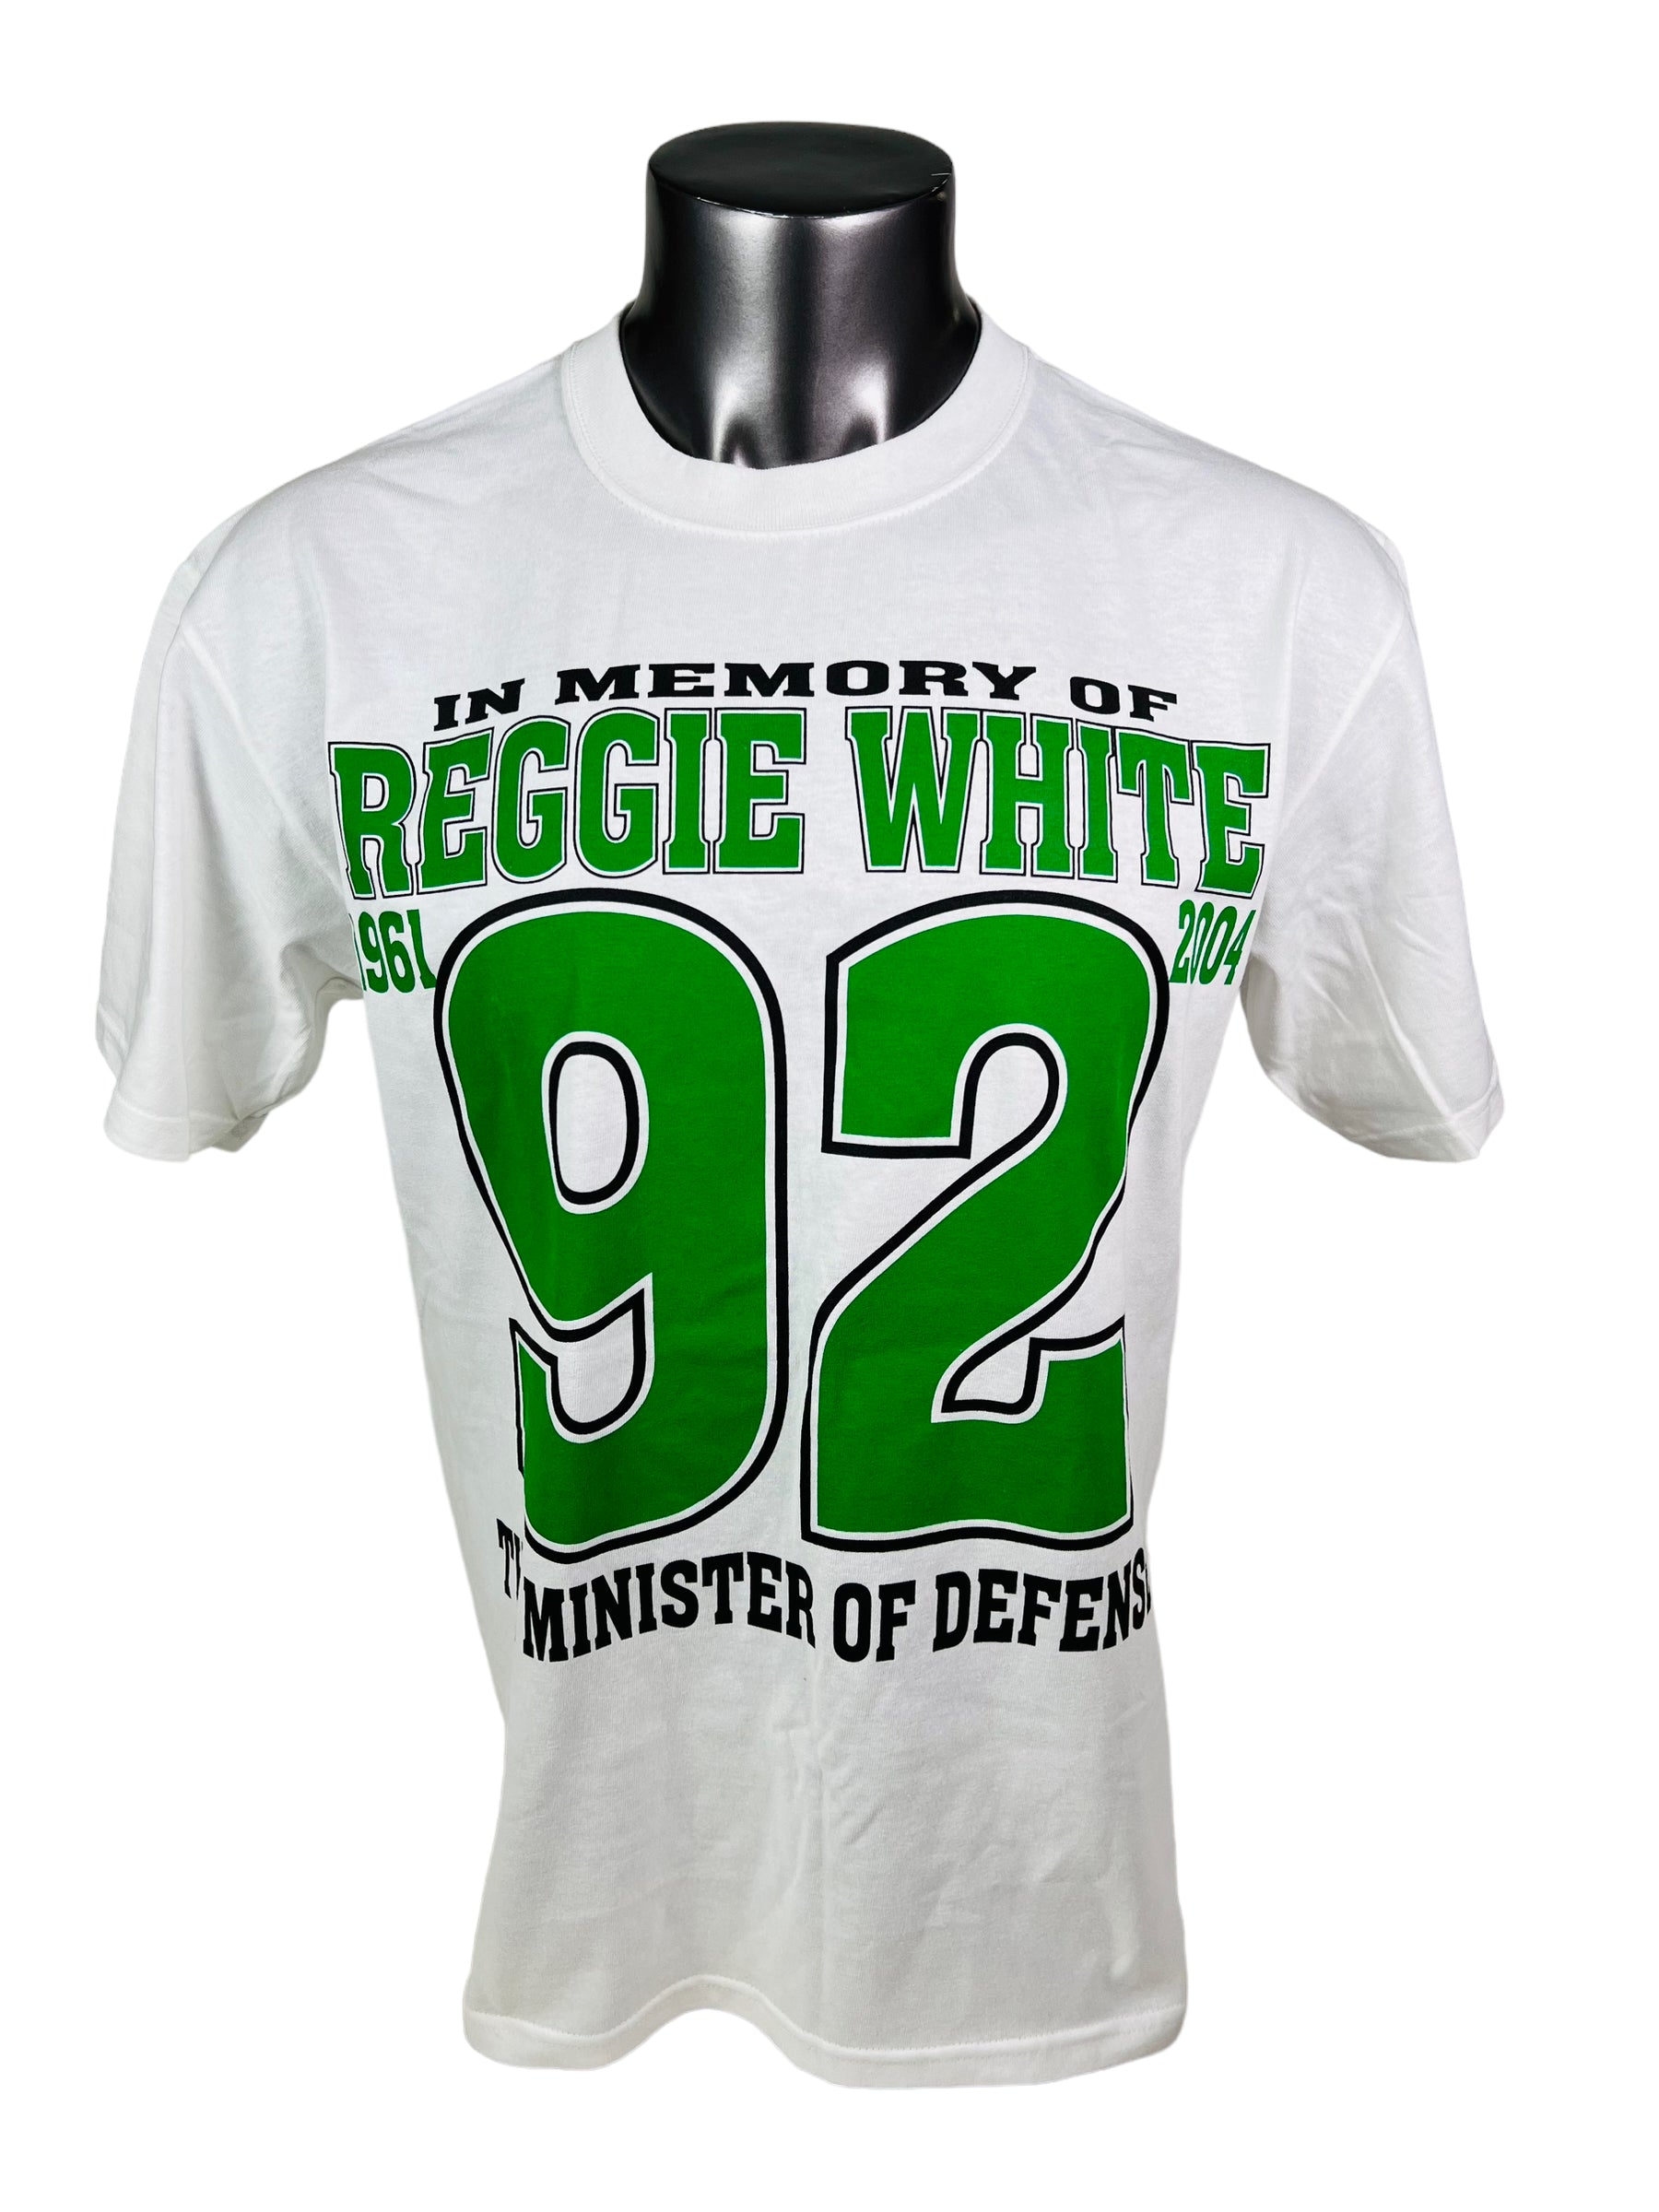 REGGIE WHITE PHILADELPHIA EAGLES VINTAGE 2004 MEMORIAL #92 T-SHIRT